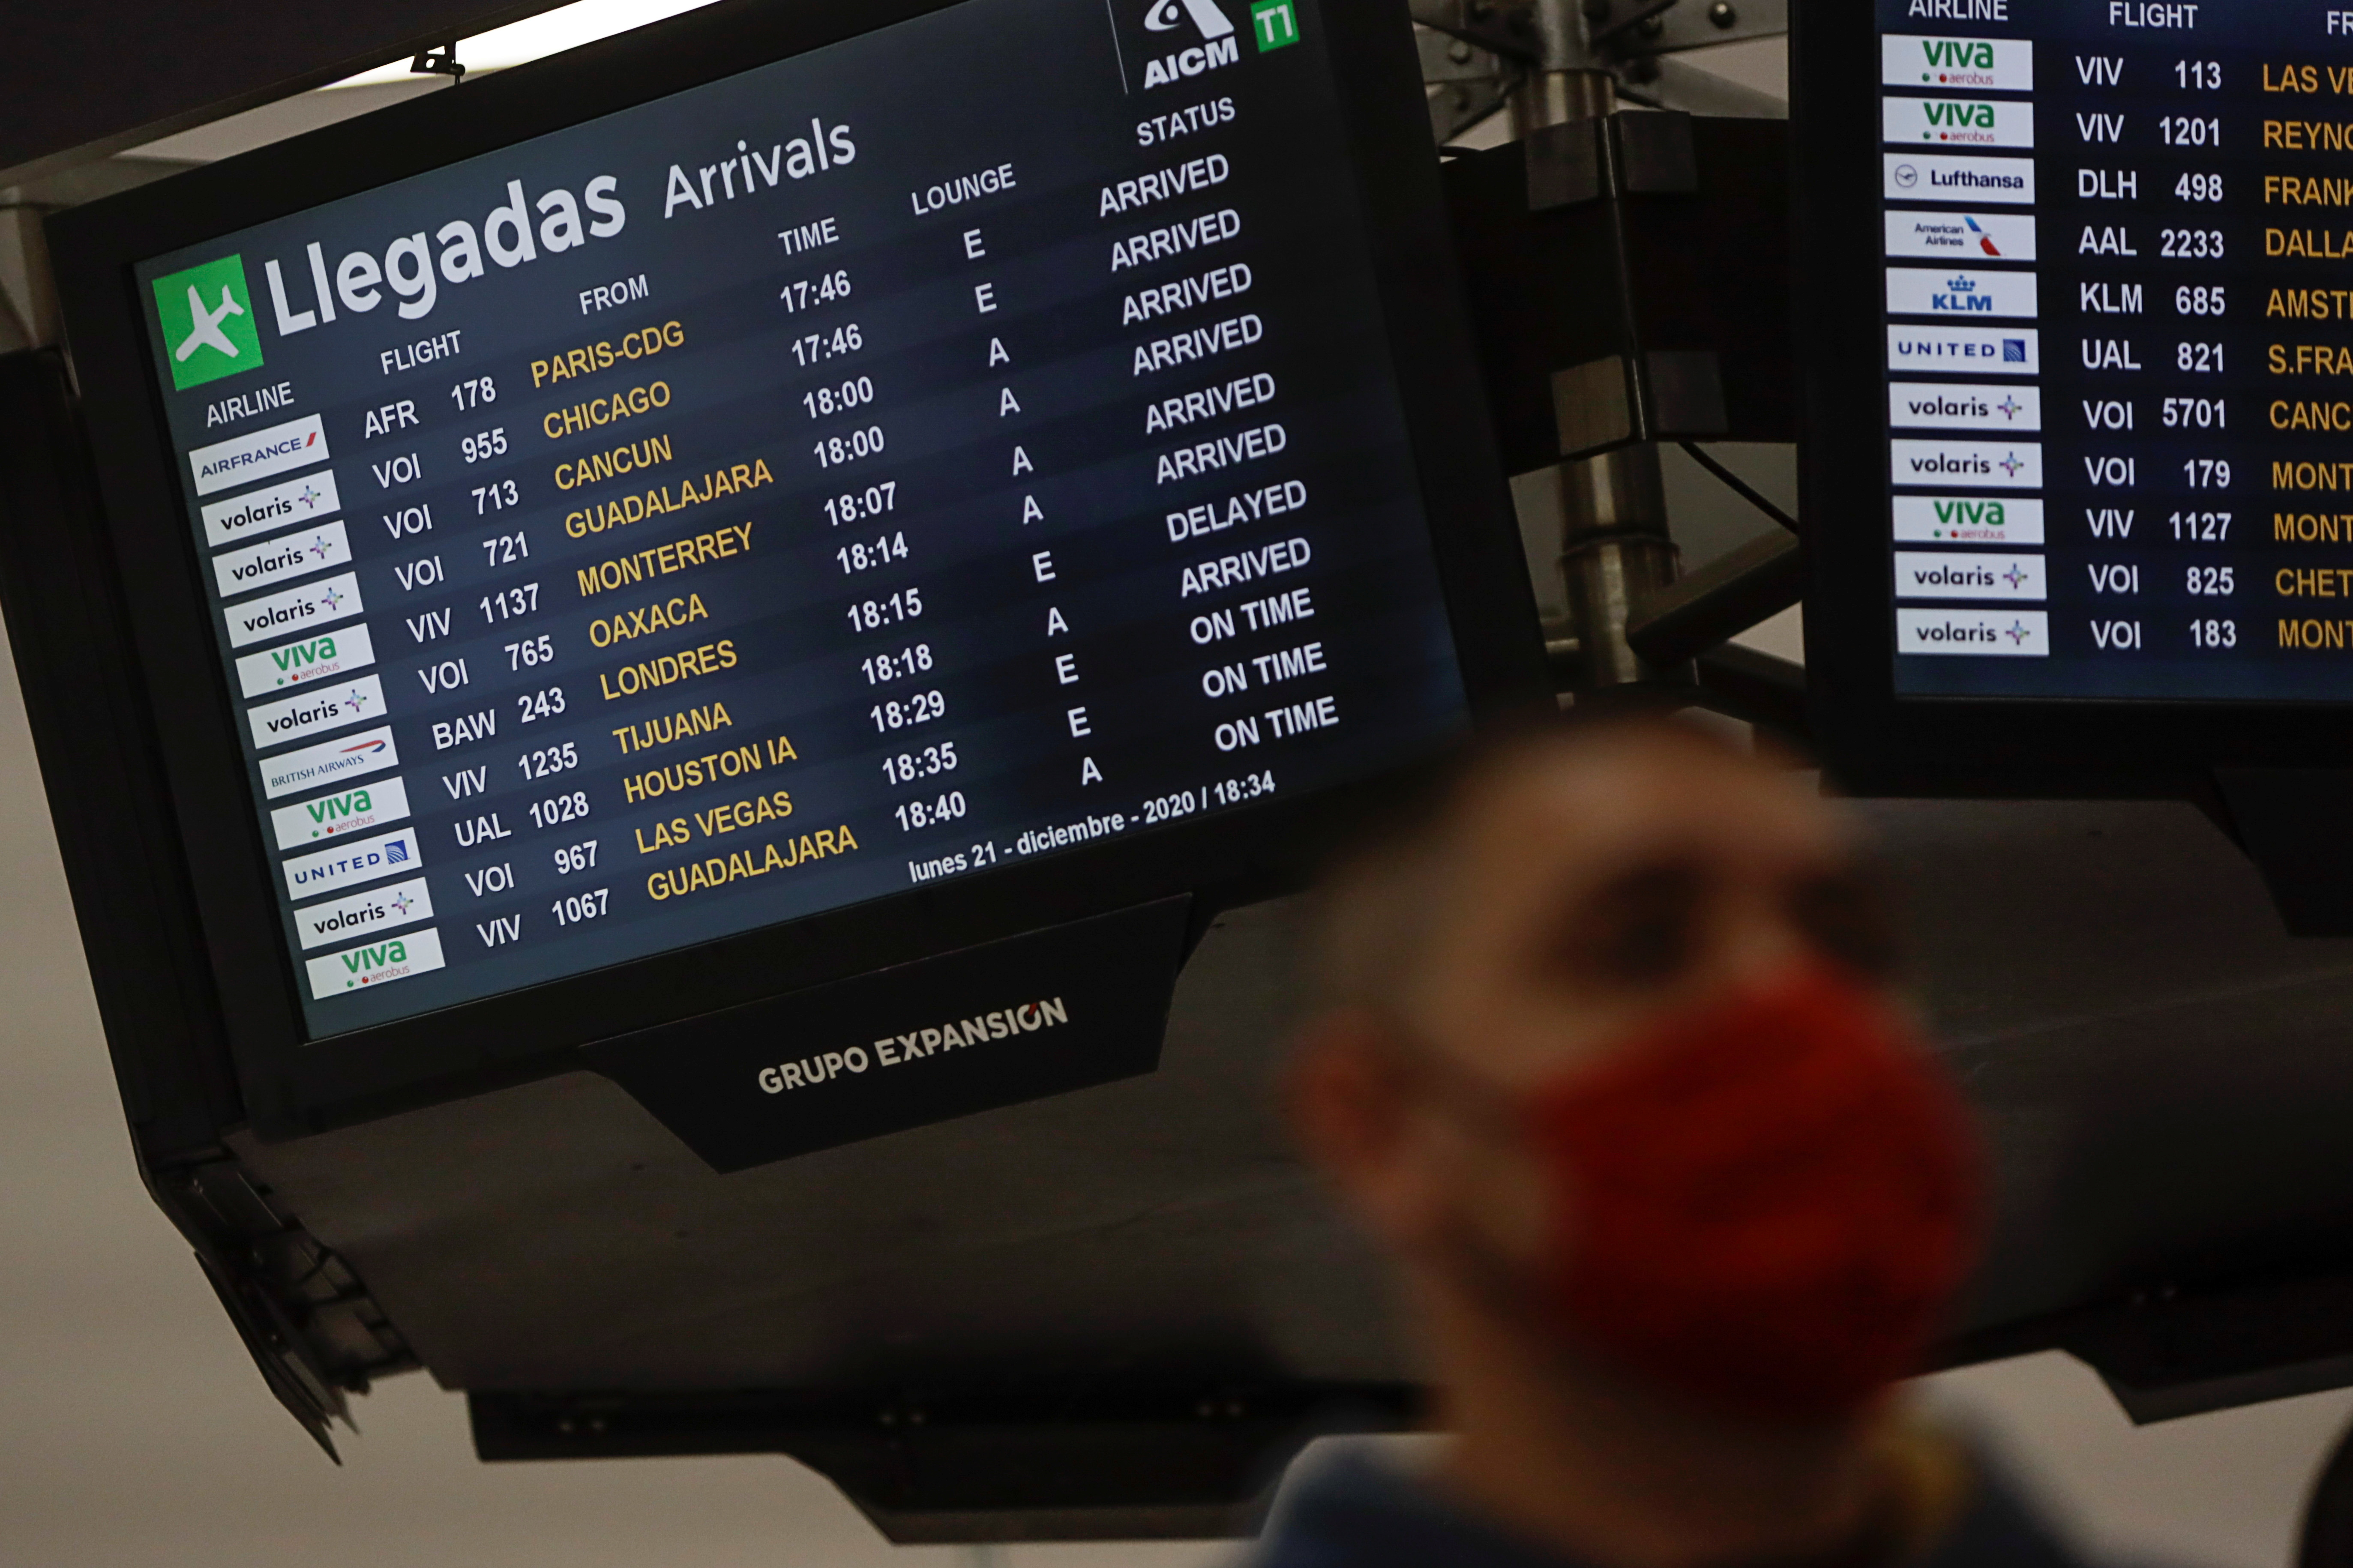 El embajador francés recomendó no realizar vuelos internacionales debido a la aceleración de la pandemia por COVID-19 en México (Foto: Luis Cortes/REUTERS)